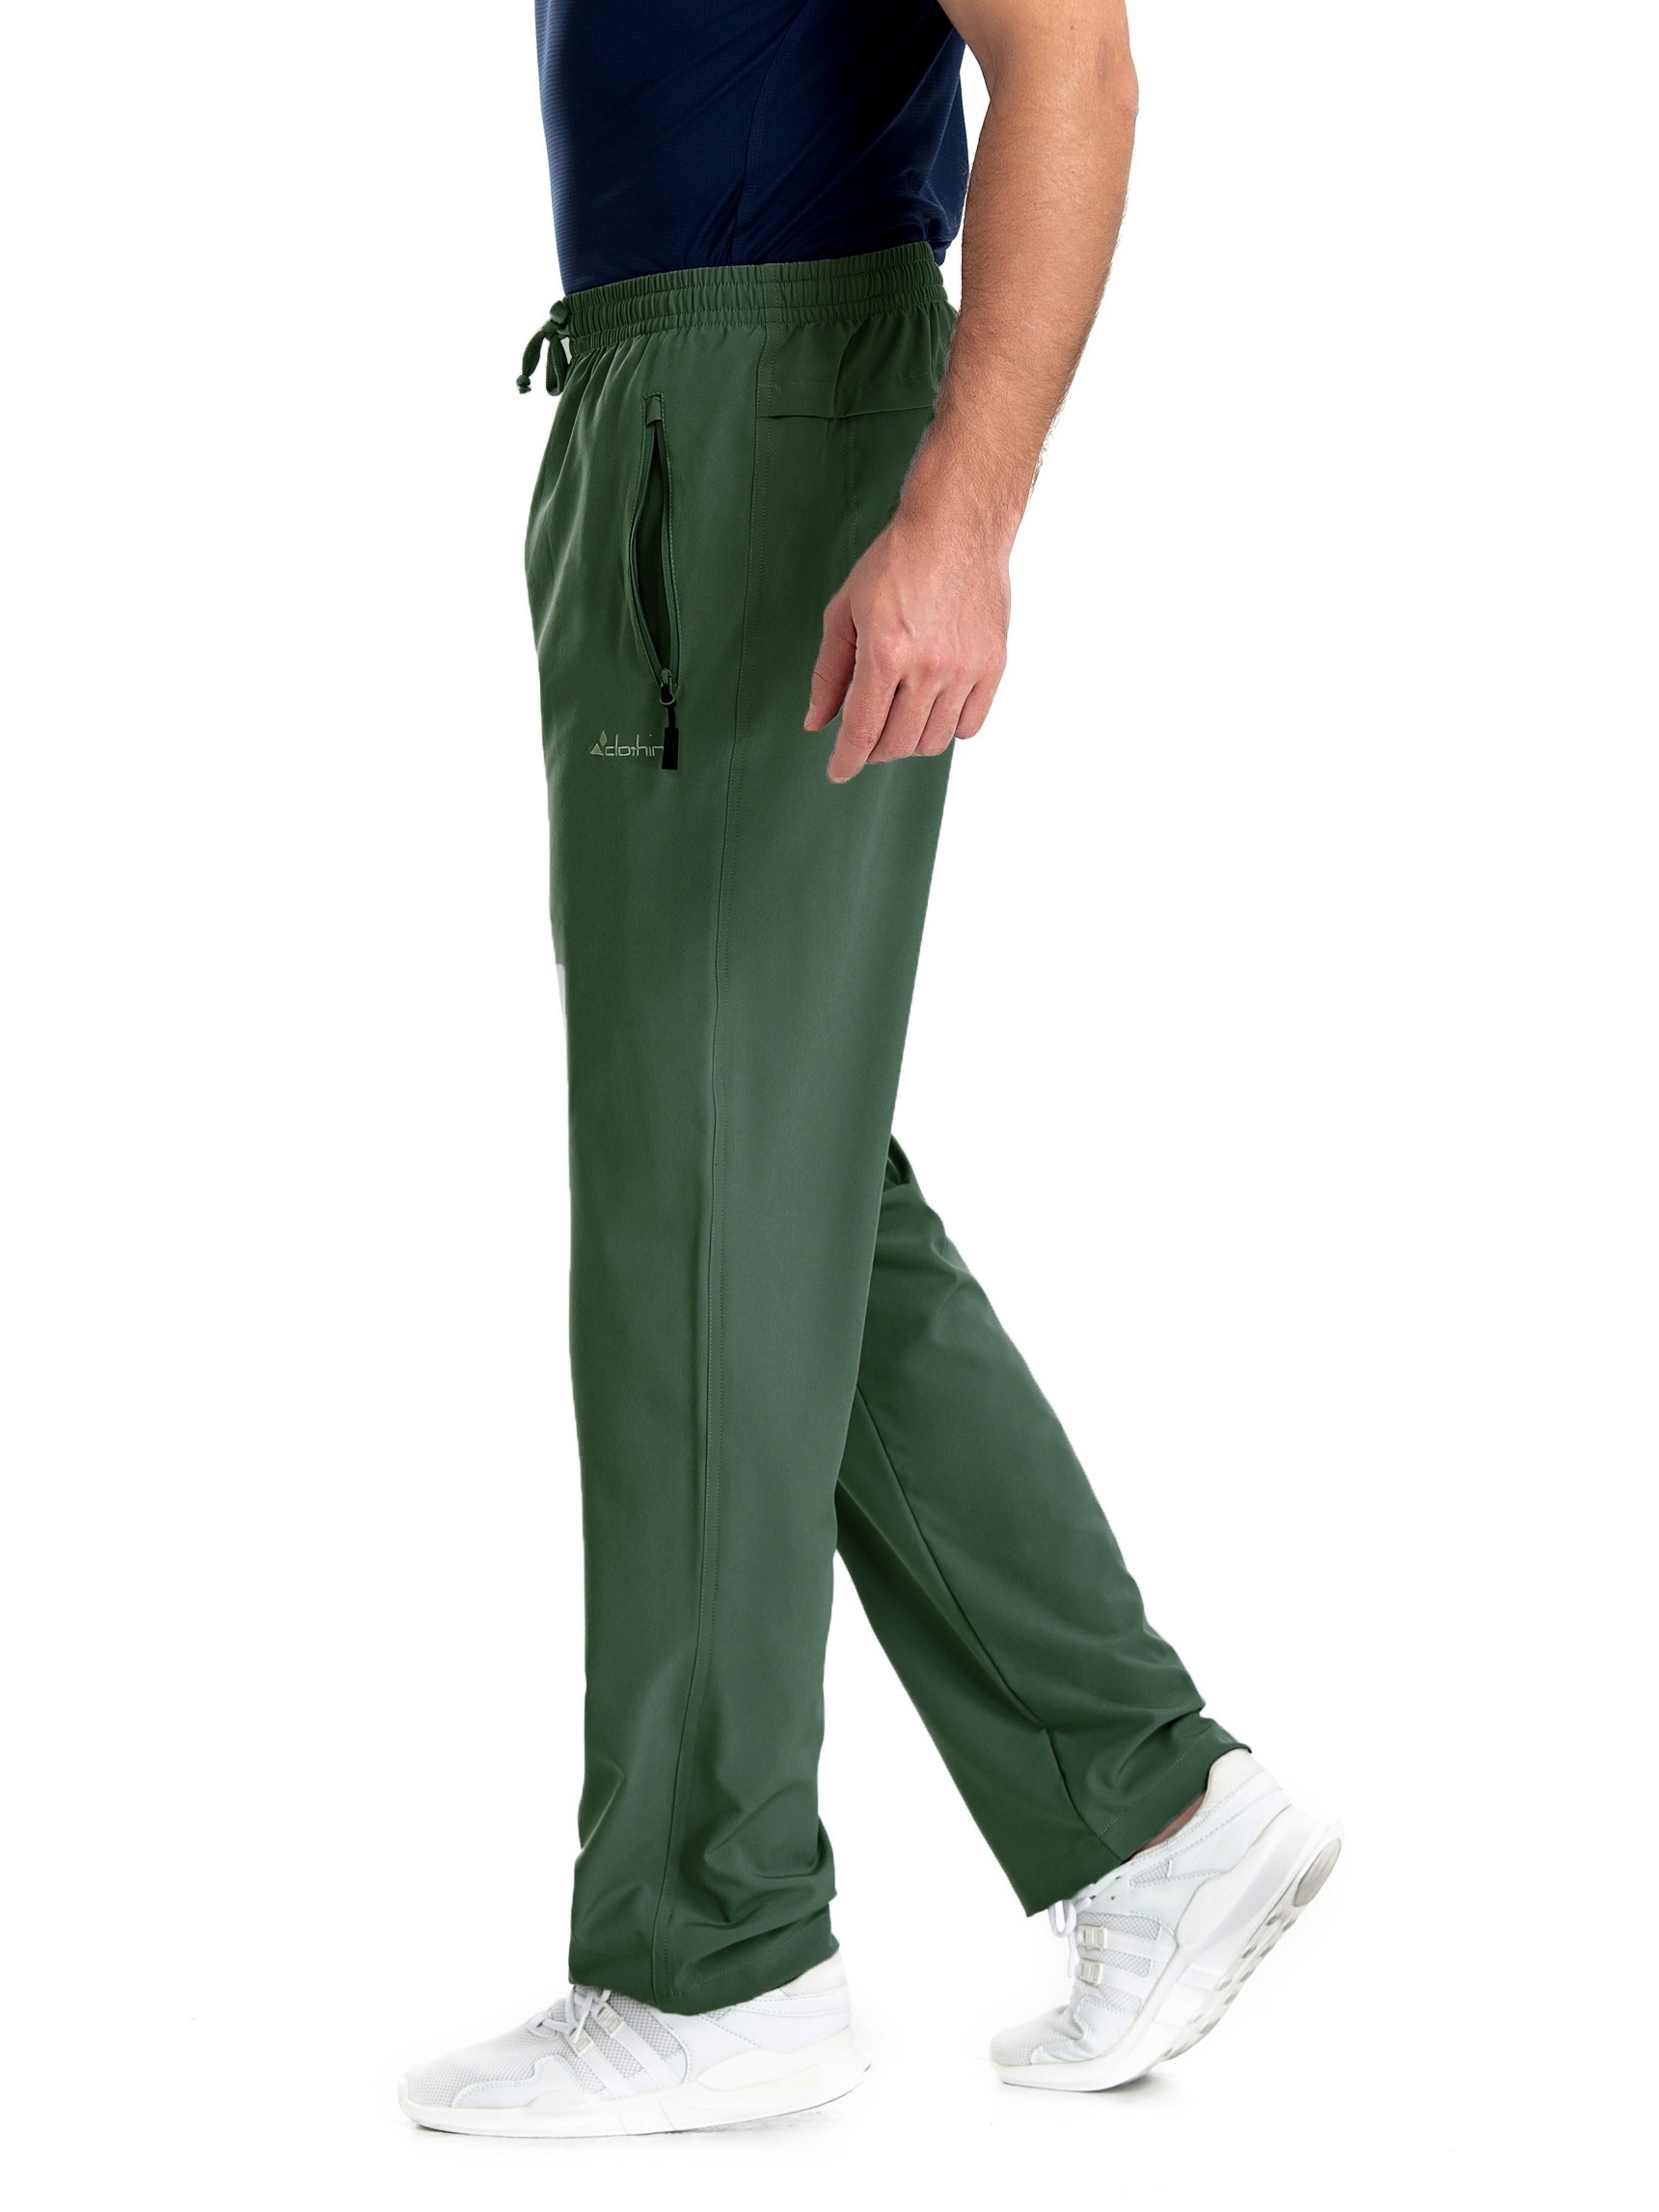 CLOTHIN - Pantalones deportivos para hombre, con cintura elástica y cordón,  para hacer deporte, de secado rápido